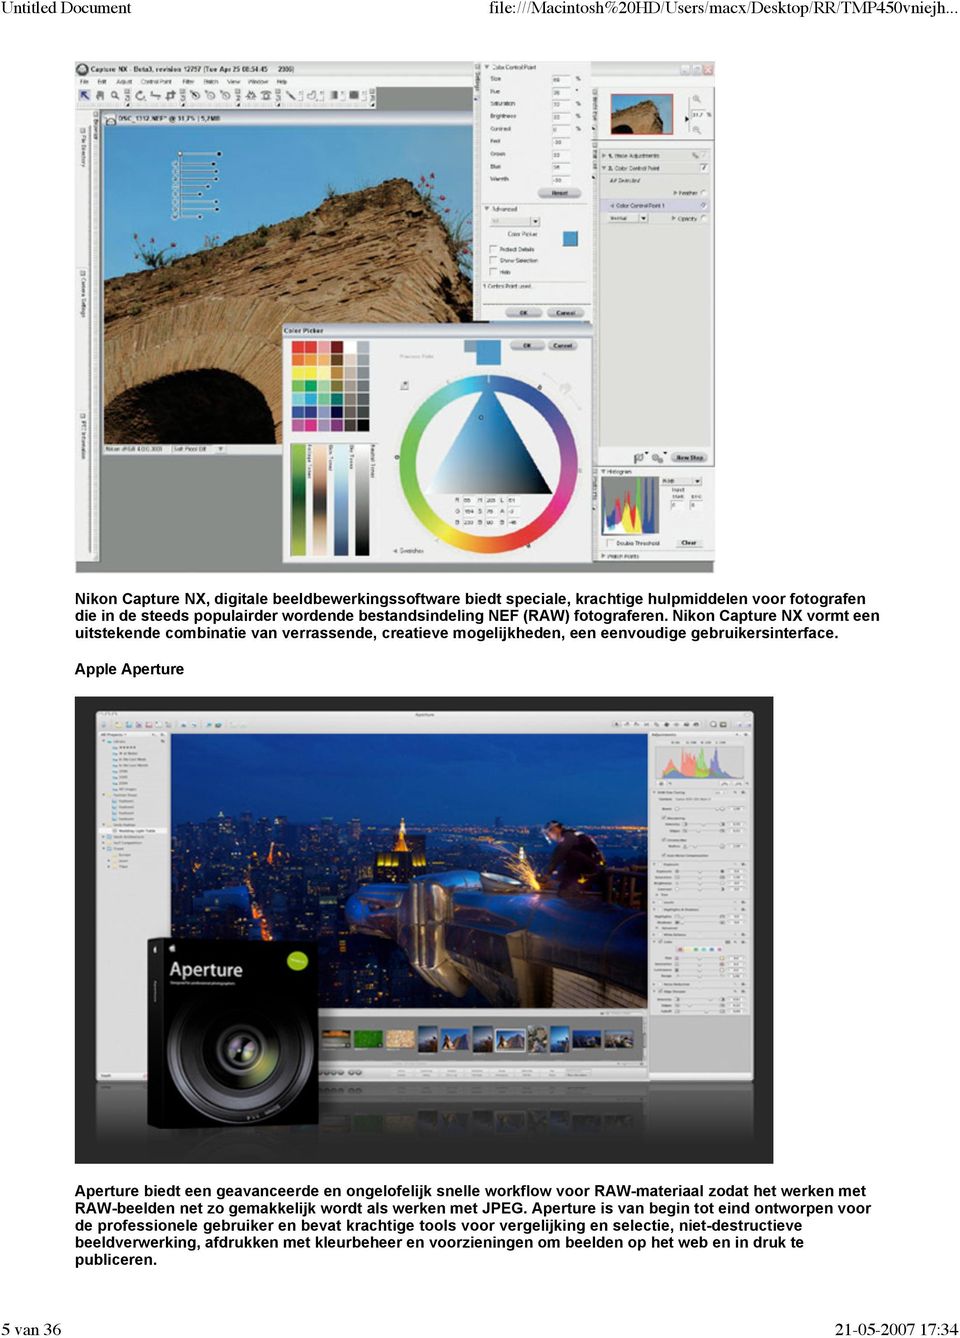 Apple Aperture Aperture biedt een geavanceerde en ongelofelijk snelle workflow voor RAW-materiaal zodat het werken met RAW-beelden net zo gemakkelijk wordt als werken met JPEG.